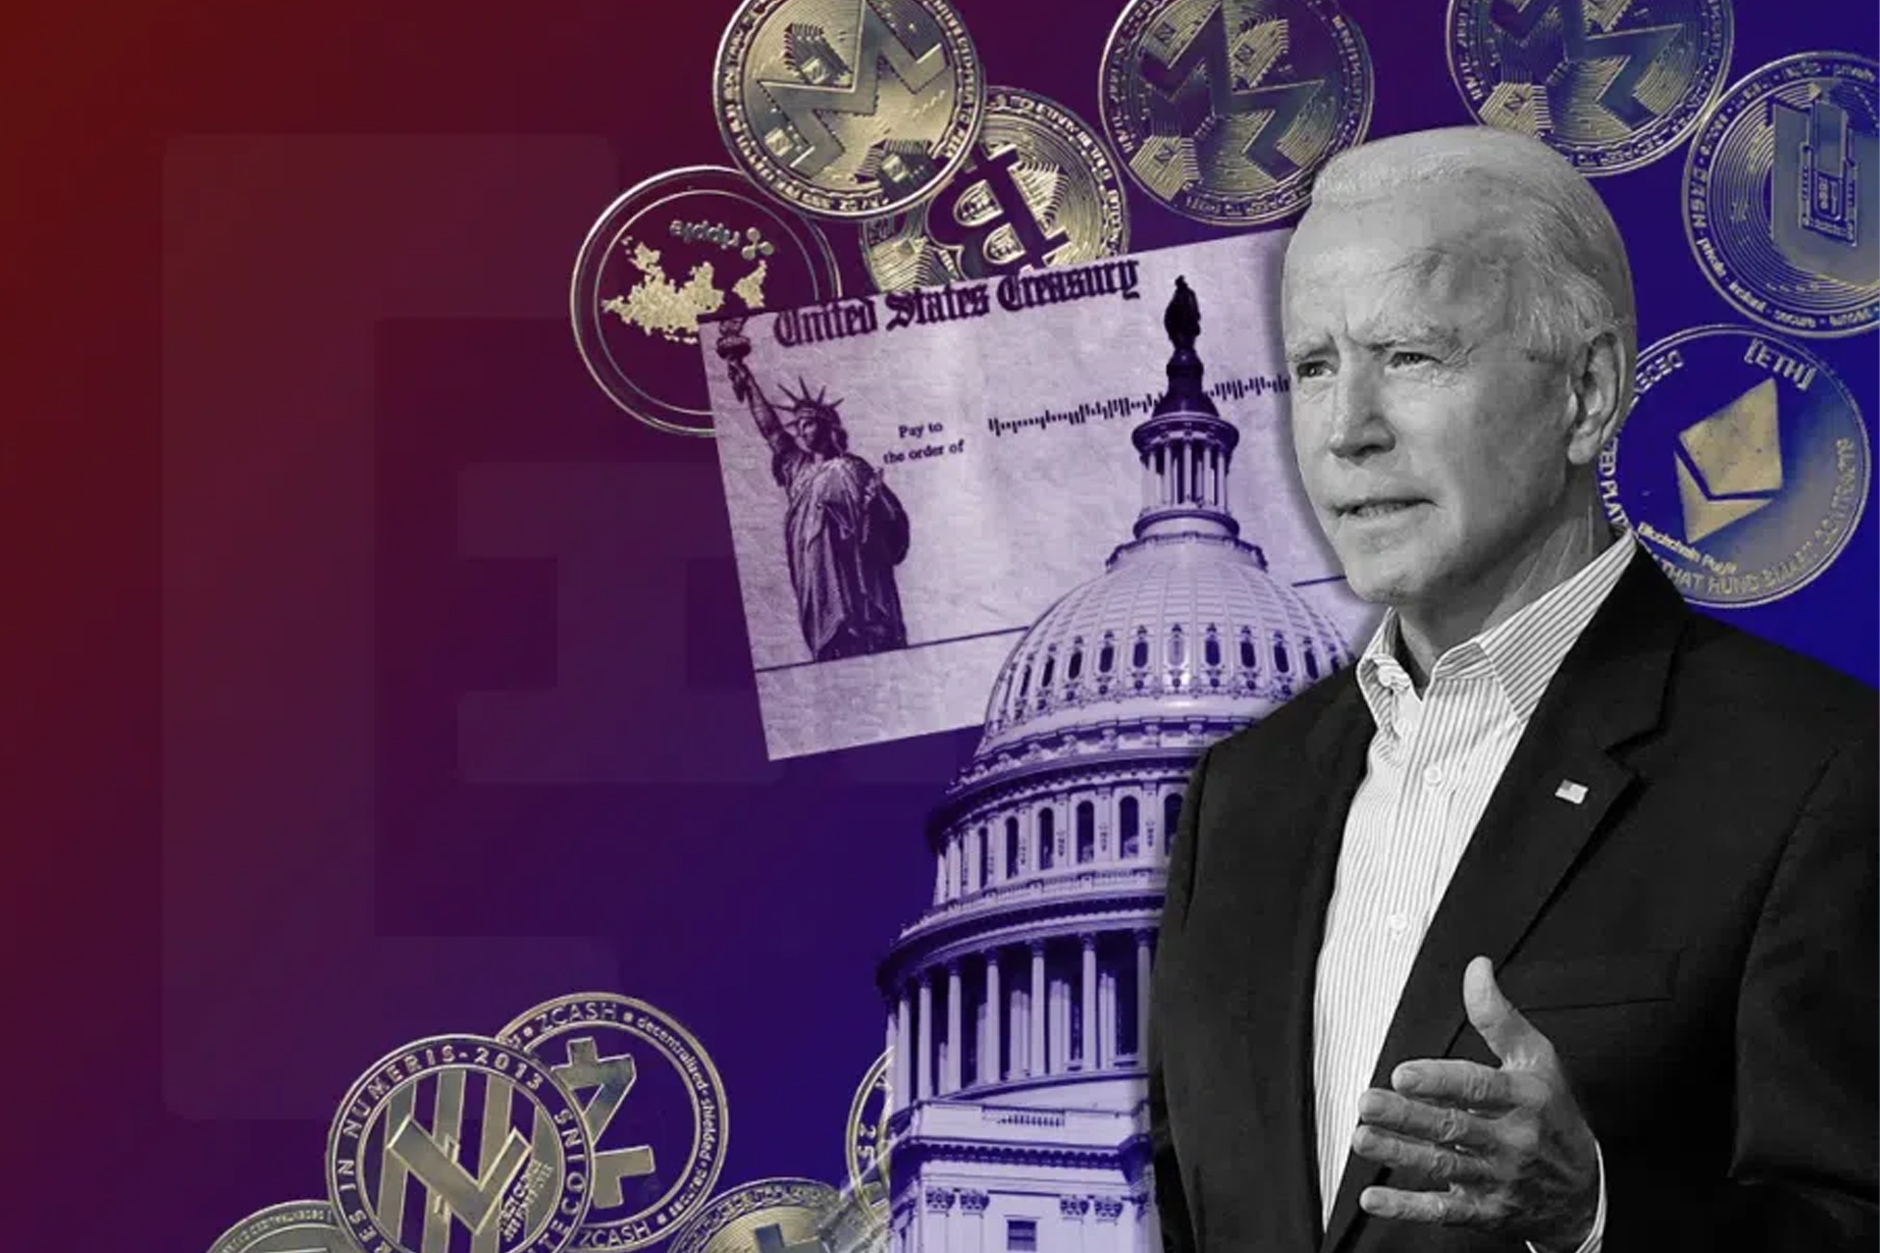 Top 10 criptonoticias: Joe Biden firma orden ejecutiva sobre criptomonedas, eBay lanza wallet digital, Ripple obtiene una “victoria” en su juicio…